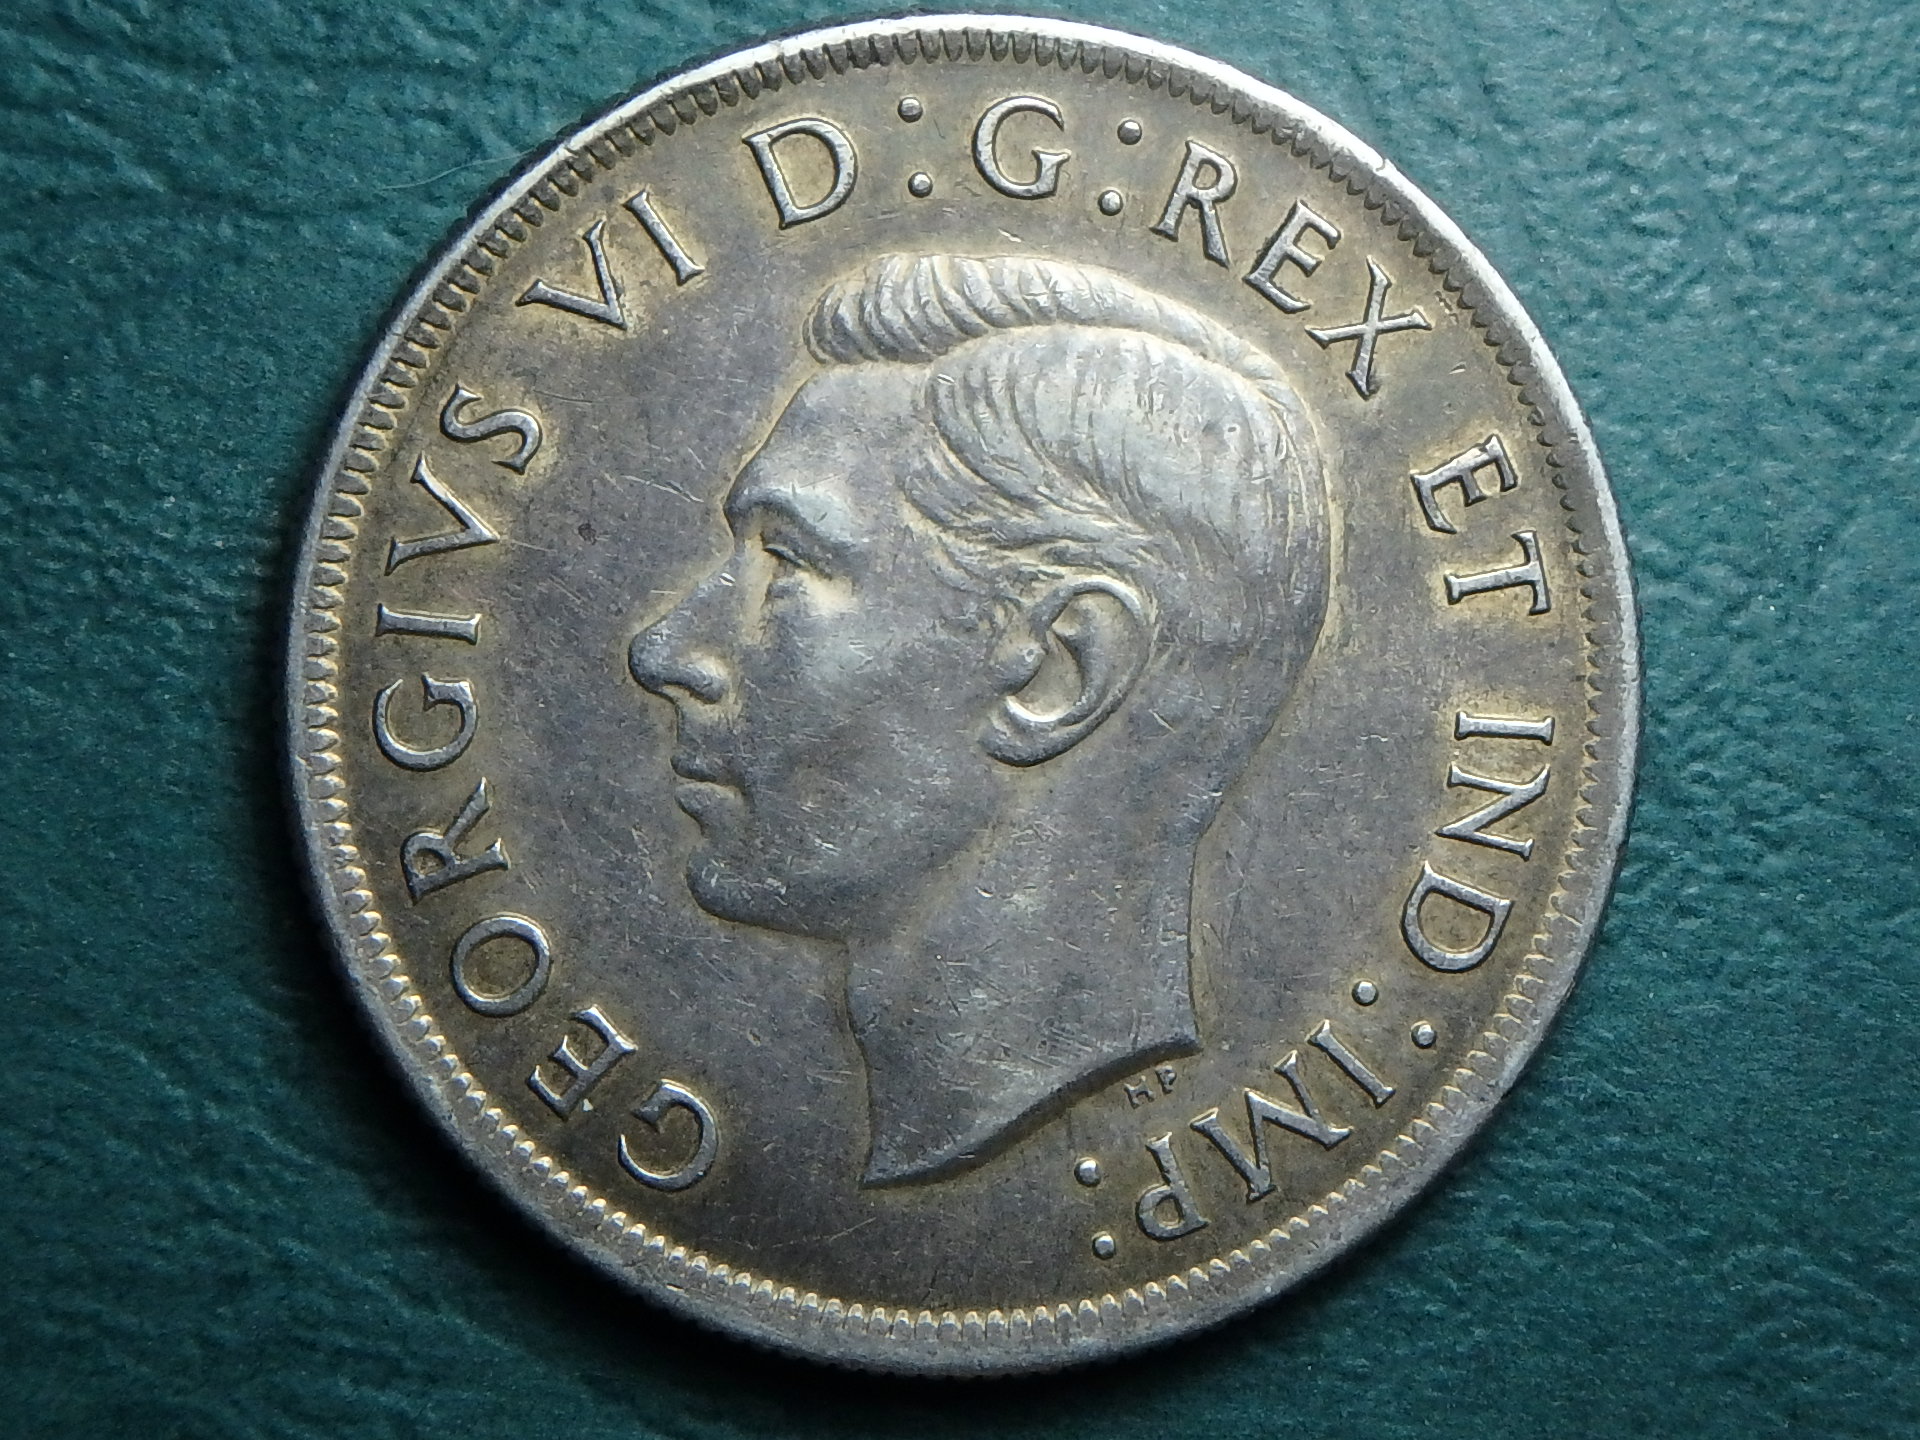 1937 Canada 1 dol obv.JPG